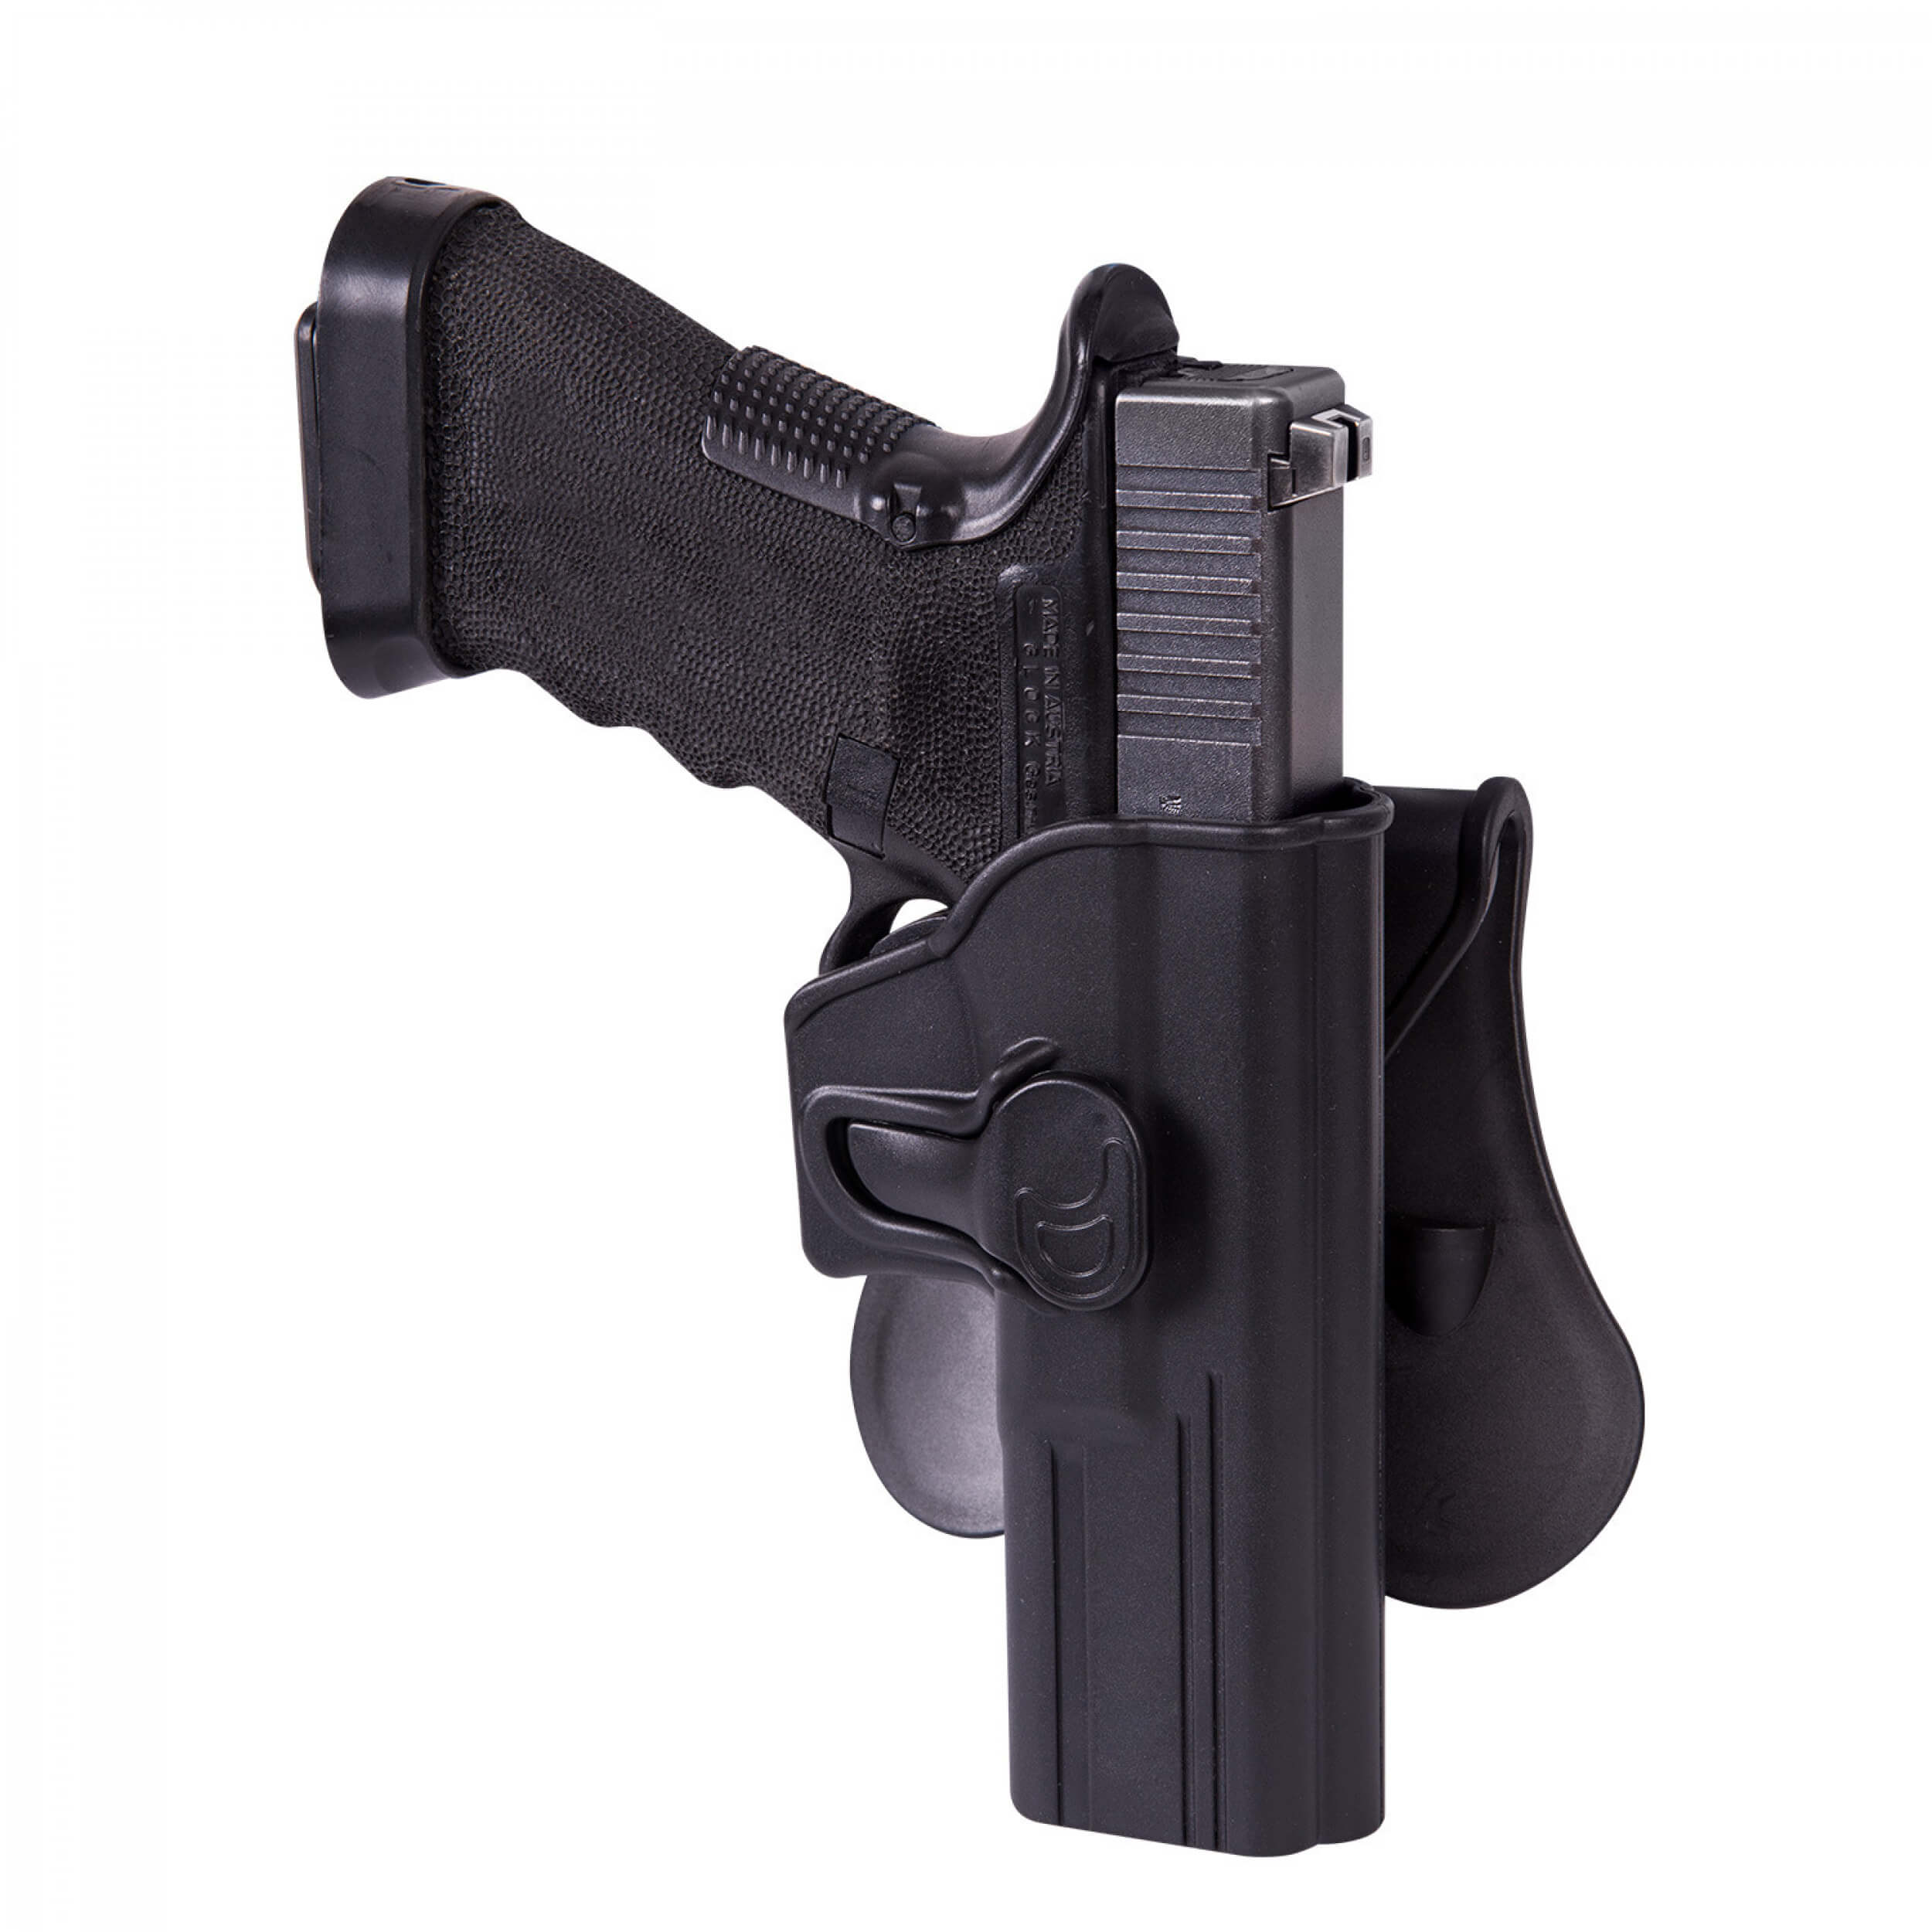 Helikon-Tex Release Holster für Glock 17 mit Paddle - Military Grade Polymer - Schwarz